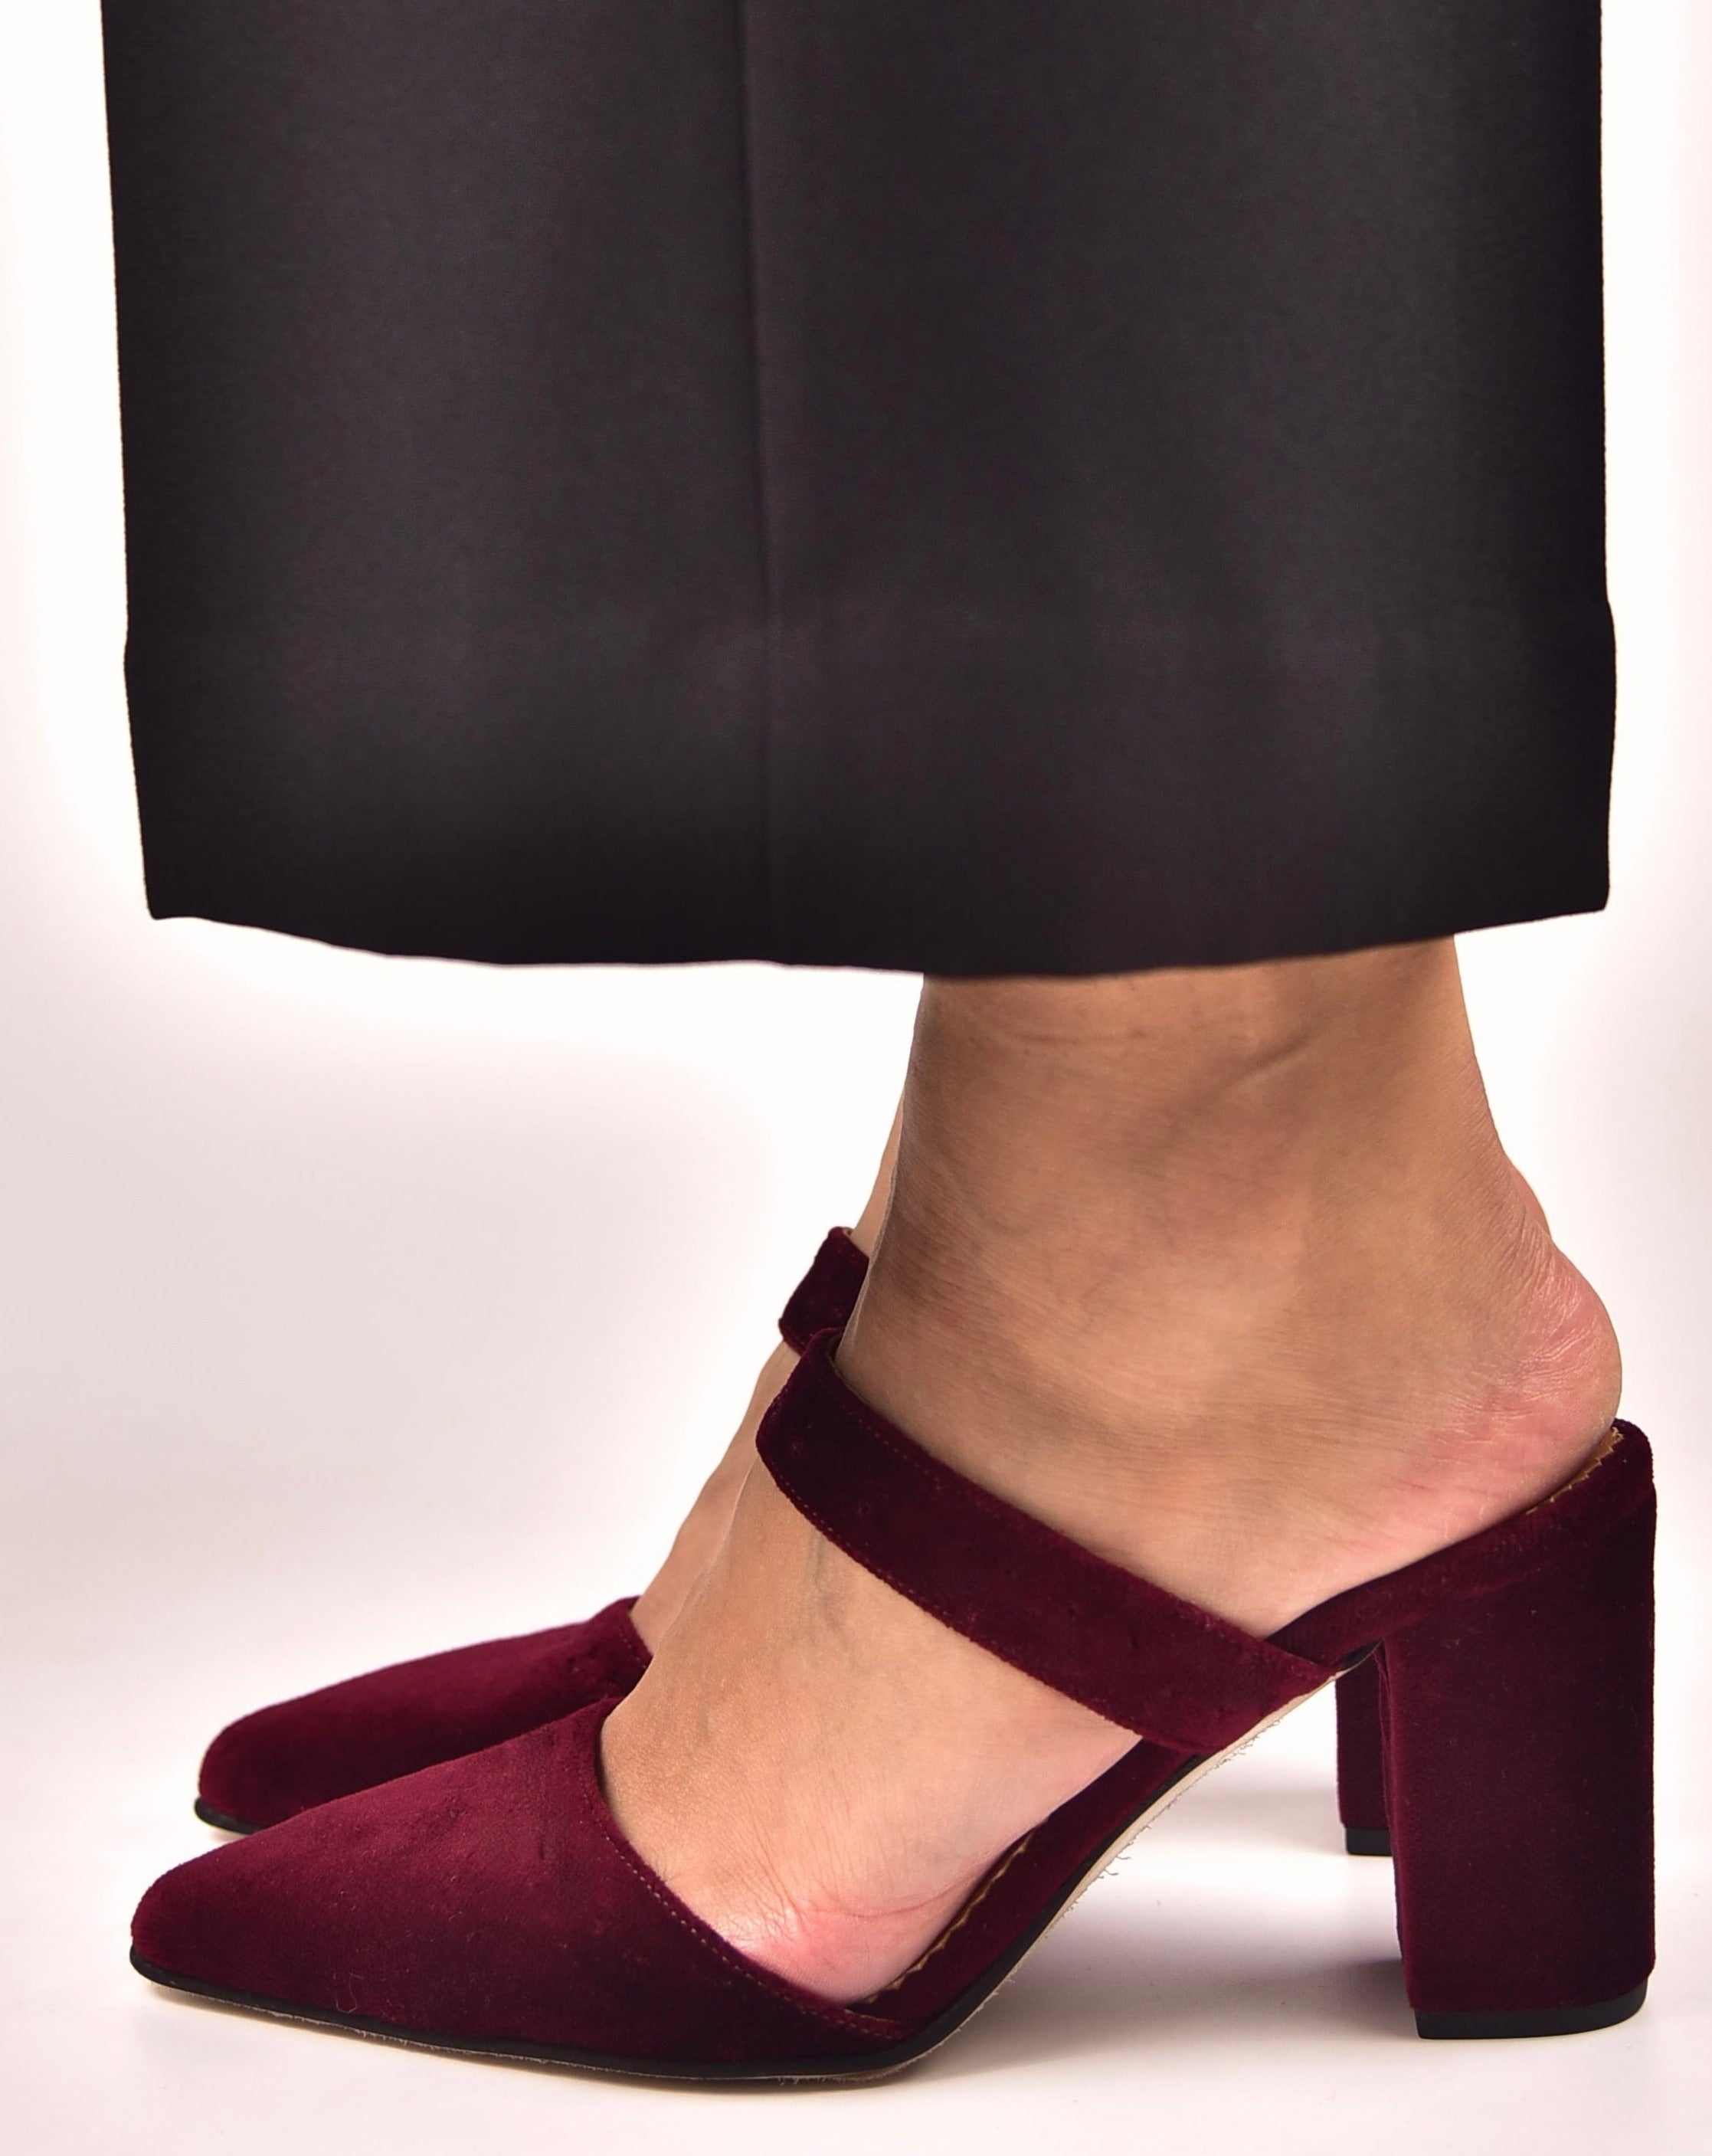 velvet shoes, γυναικεία βελούδινα παπούτσια